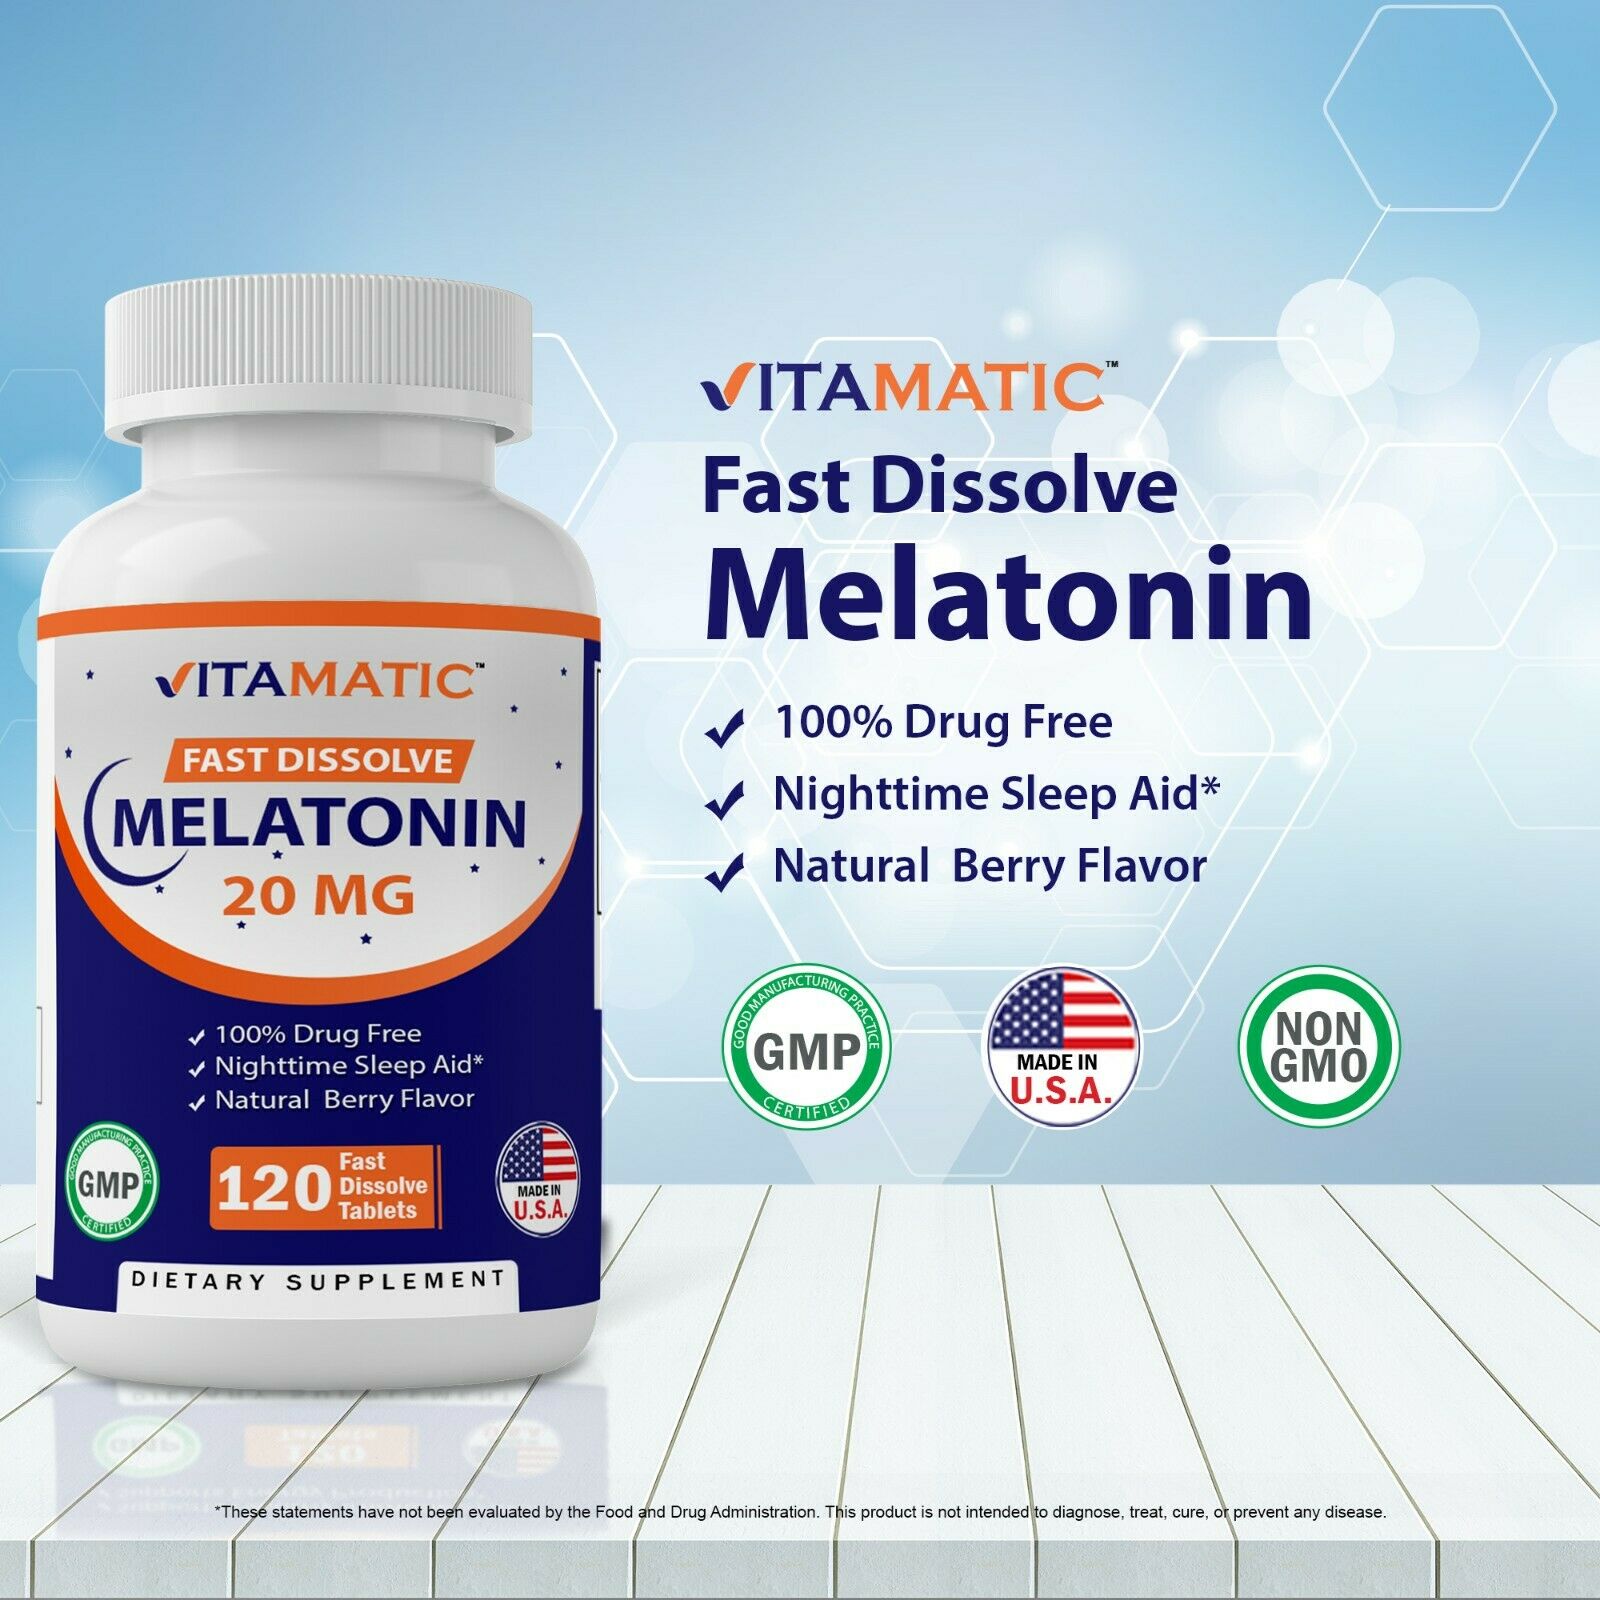 Vitamatic Melatonin 20 mg Fast Dissolve 120 Tablets - Nighttime Sleep Aid